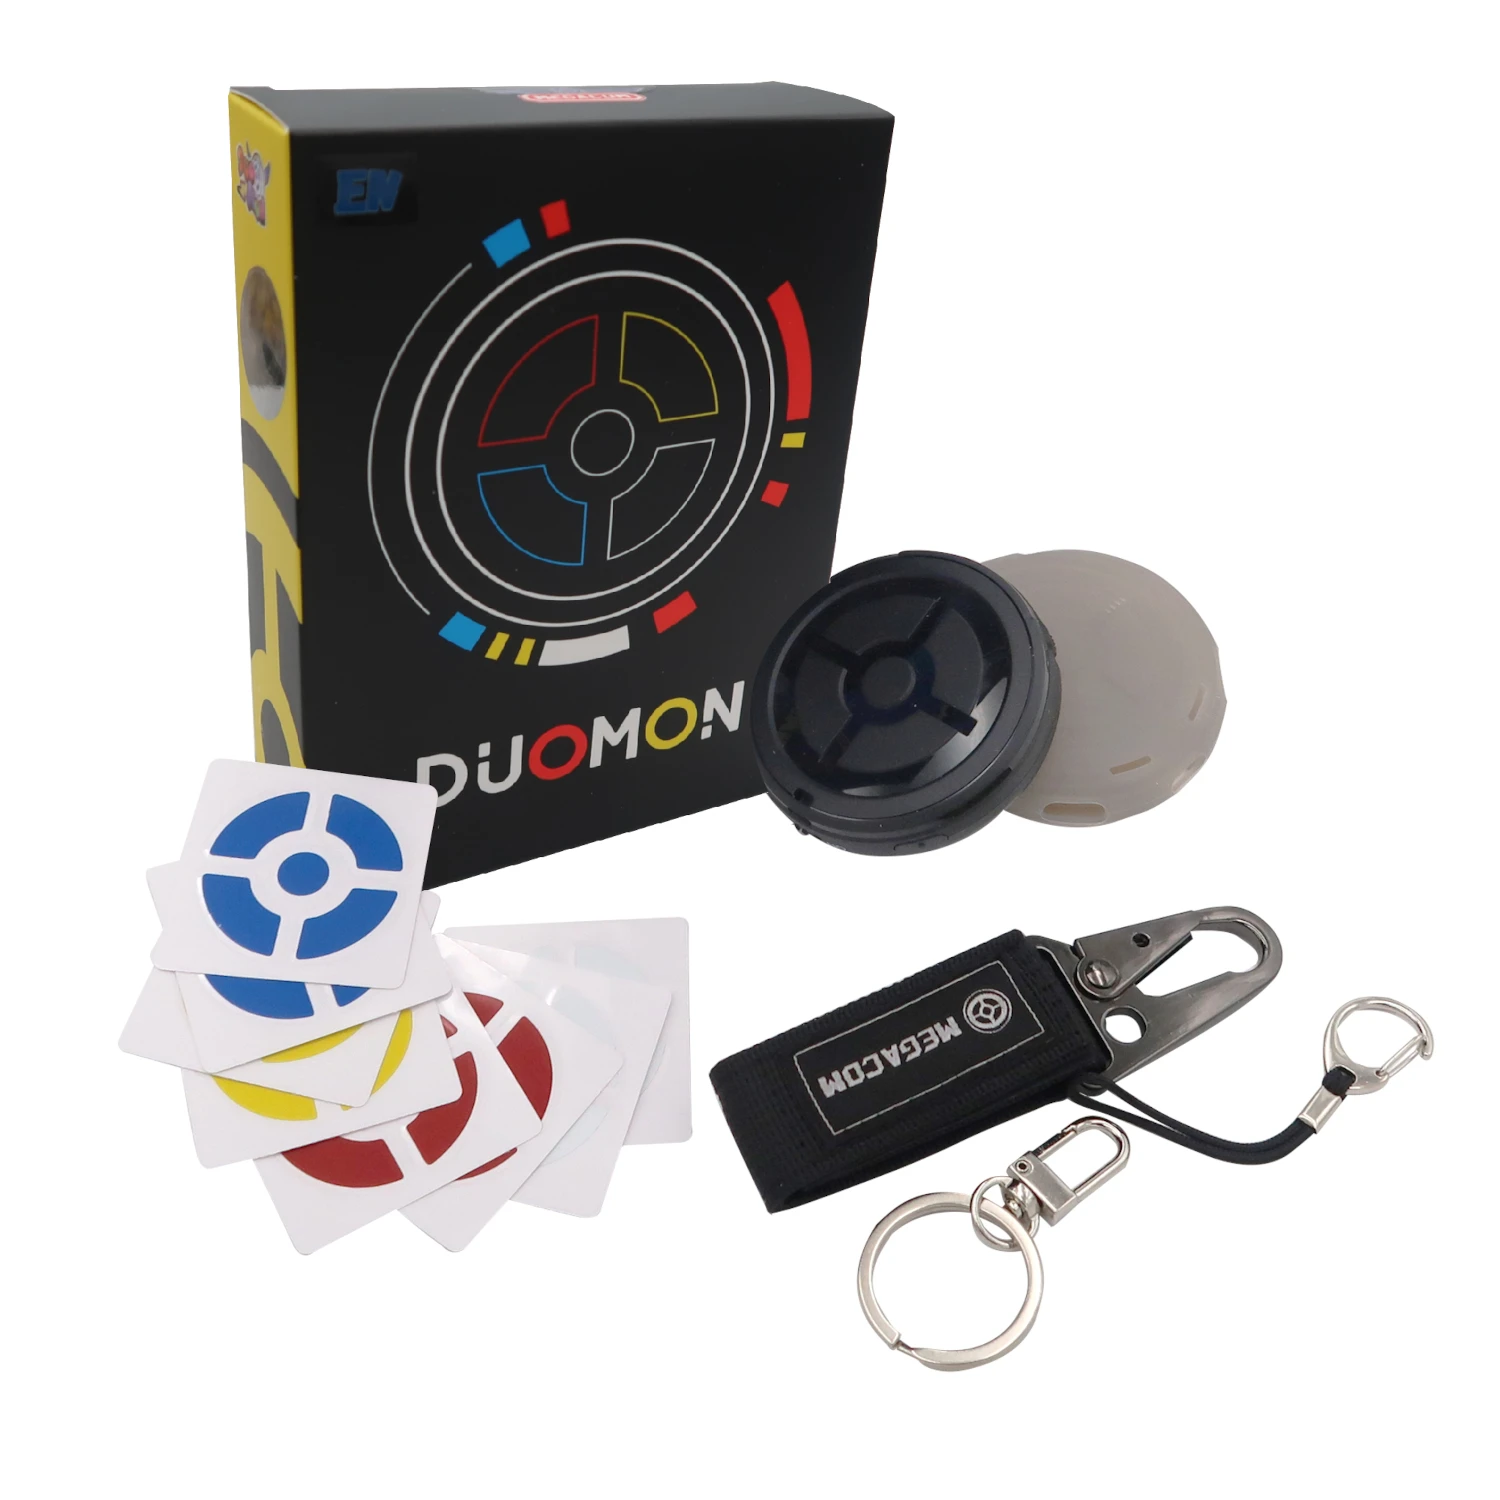 Megacom DuoMon 2ID Auto Catcher for Pokemon Go Plus - Compatible